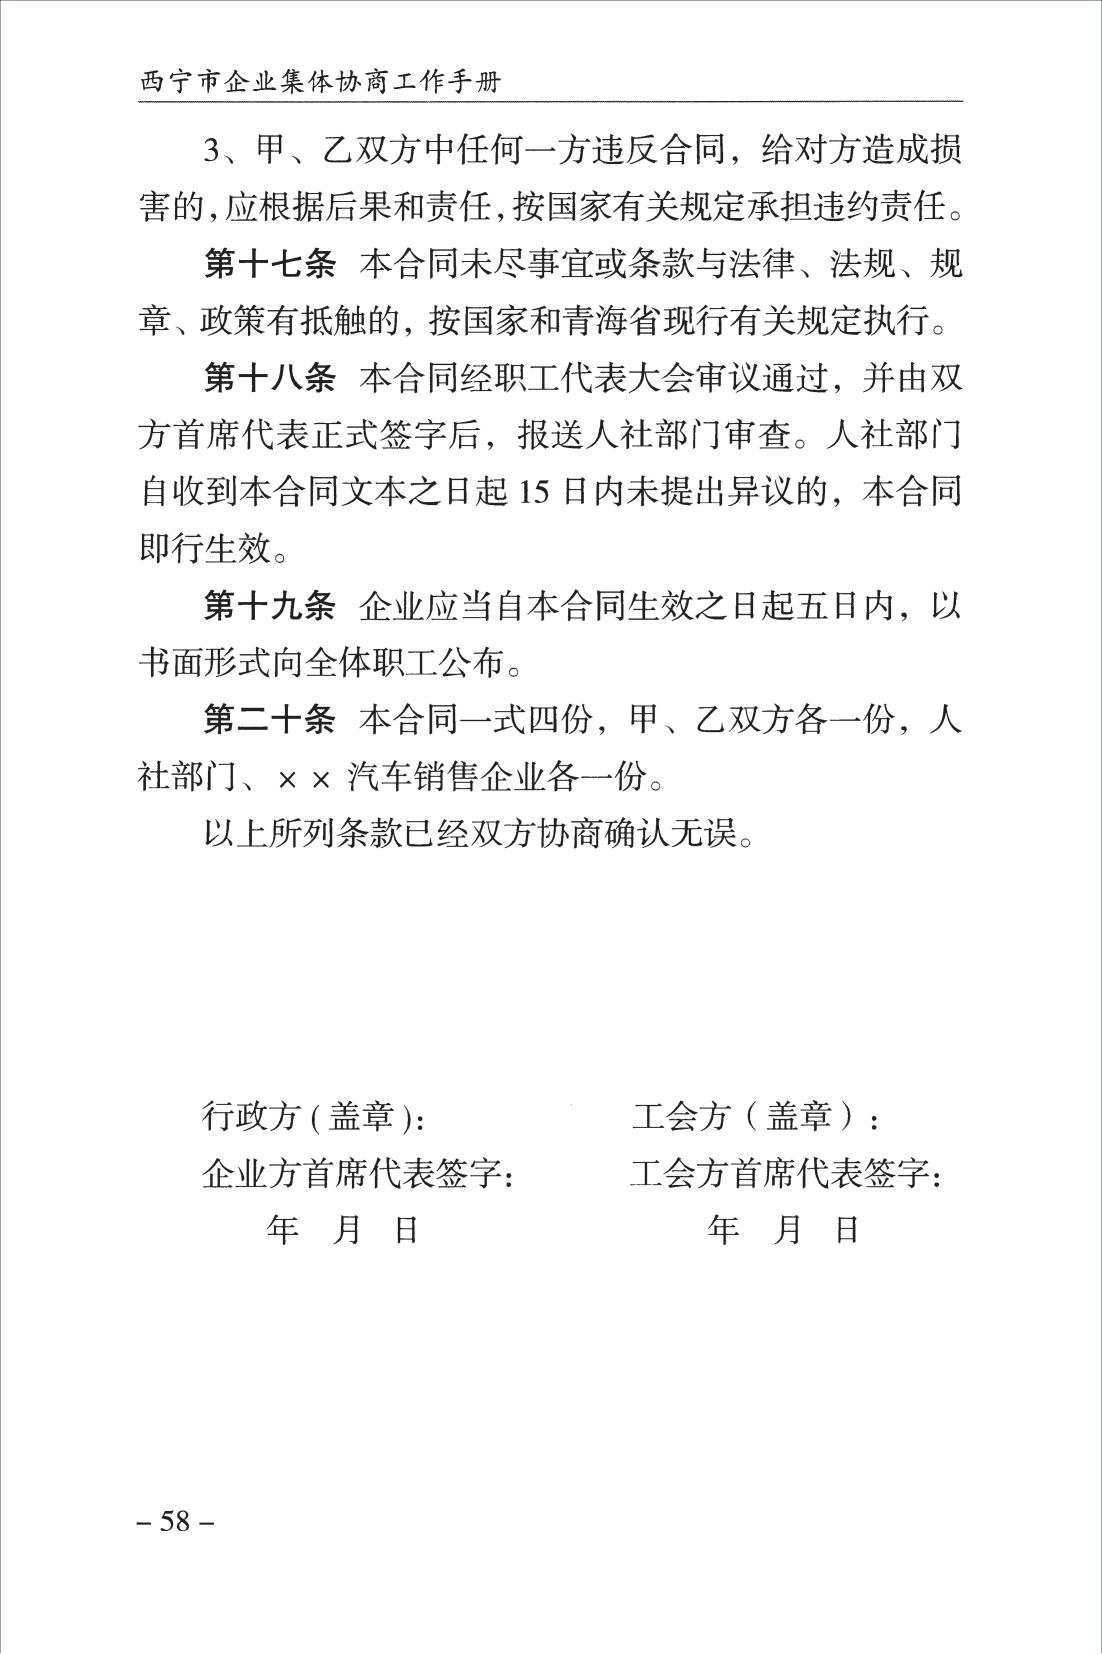 西宁市企业集体协商工作手册_60.jpg